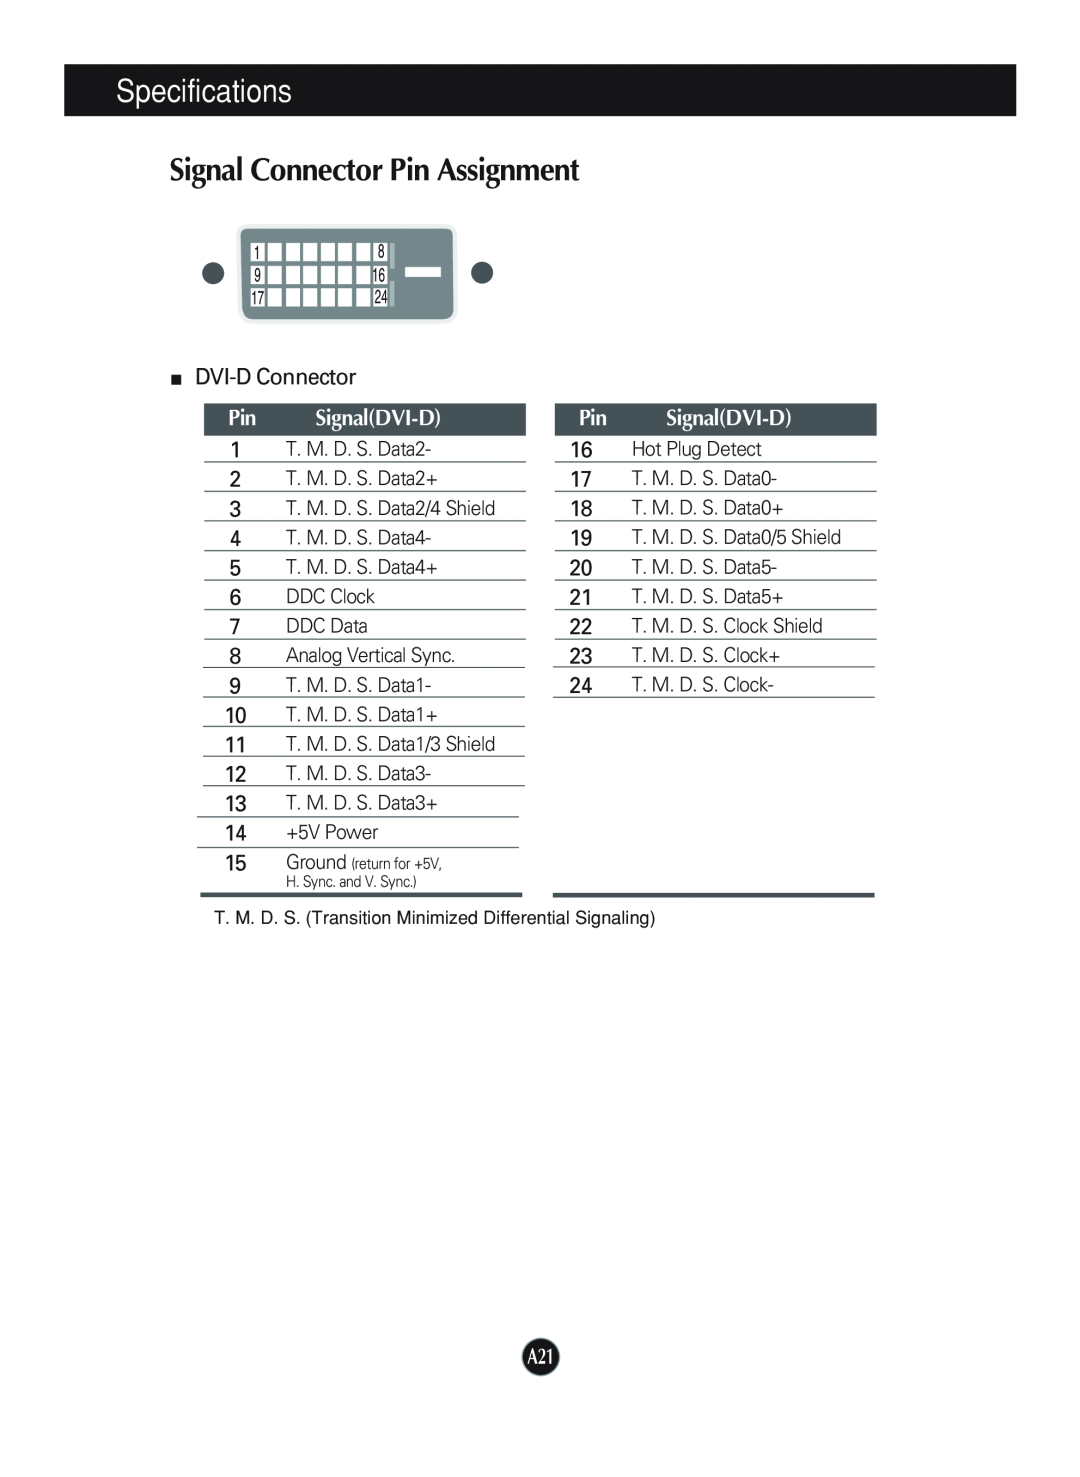 LG Electronics L1940P, L1740P manual Signal Connector Pin Assignment, Pin SignalDVI-D, Specifications, DVI-D Connector 